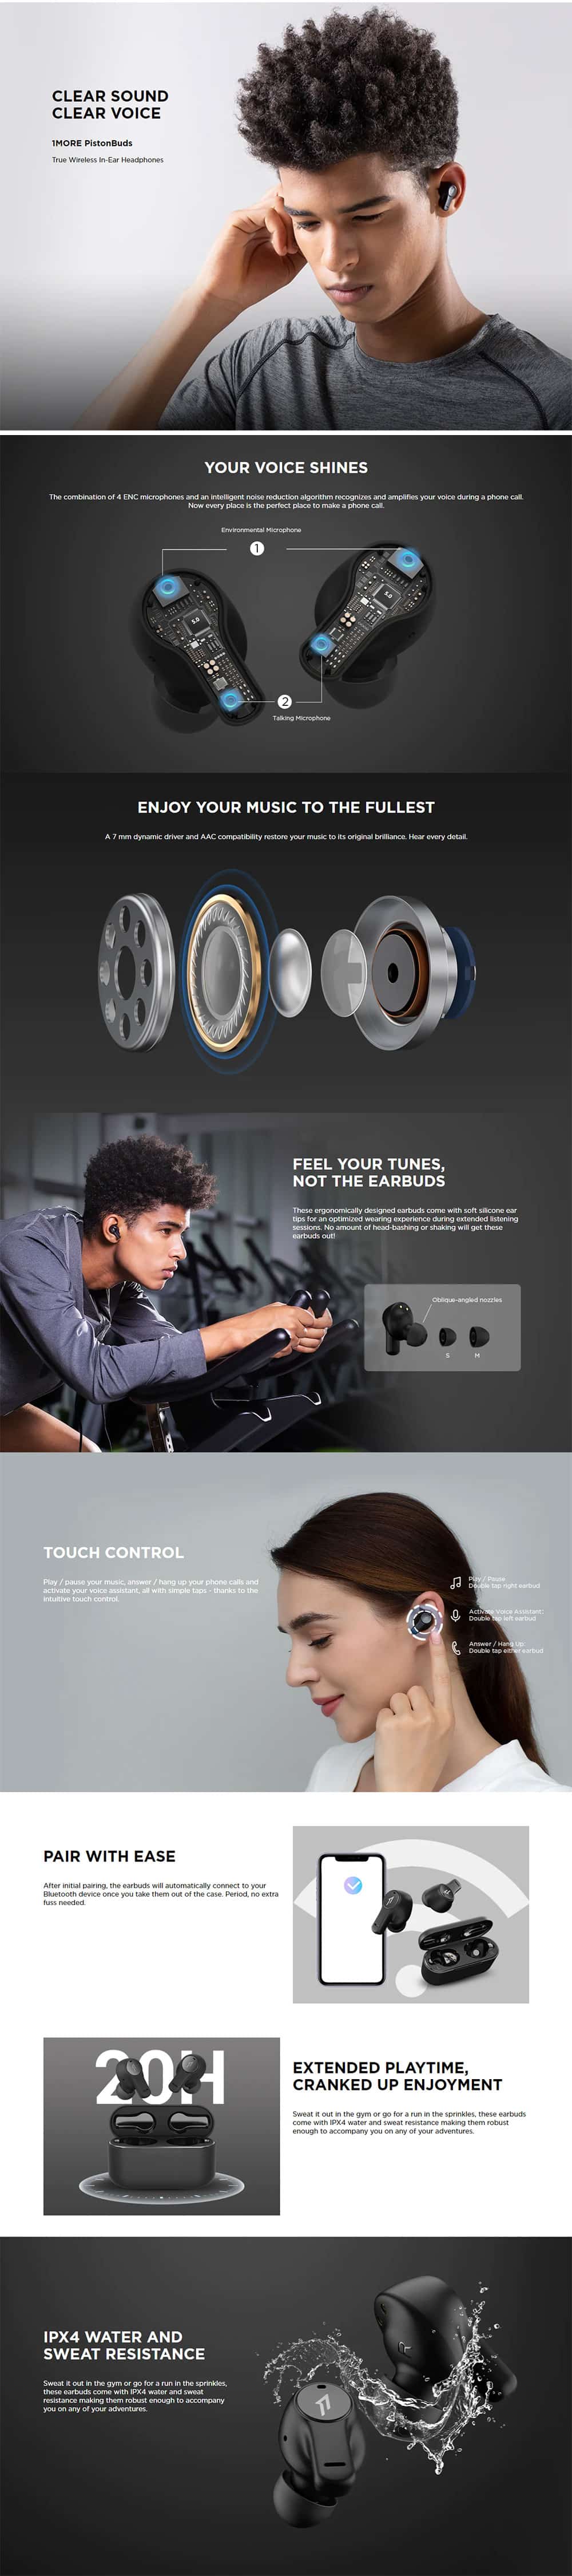 1MORE PistonBuds True Wireless In Ear Headphones 5